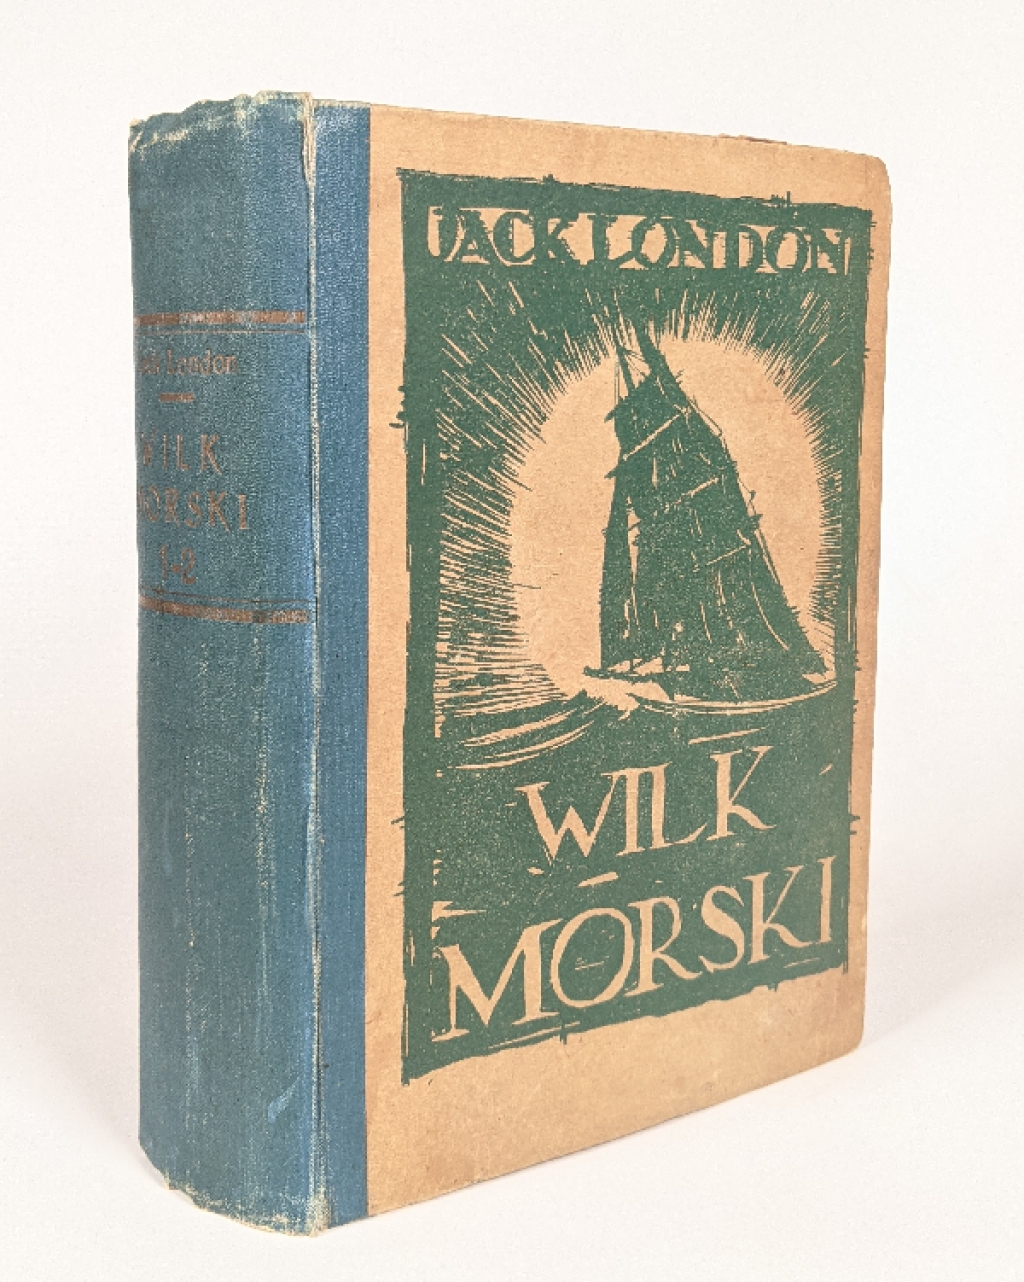 Wilk morski (The Sea Wolf), t. I-II [współoprawne]